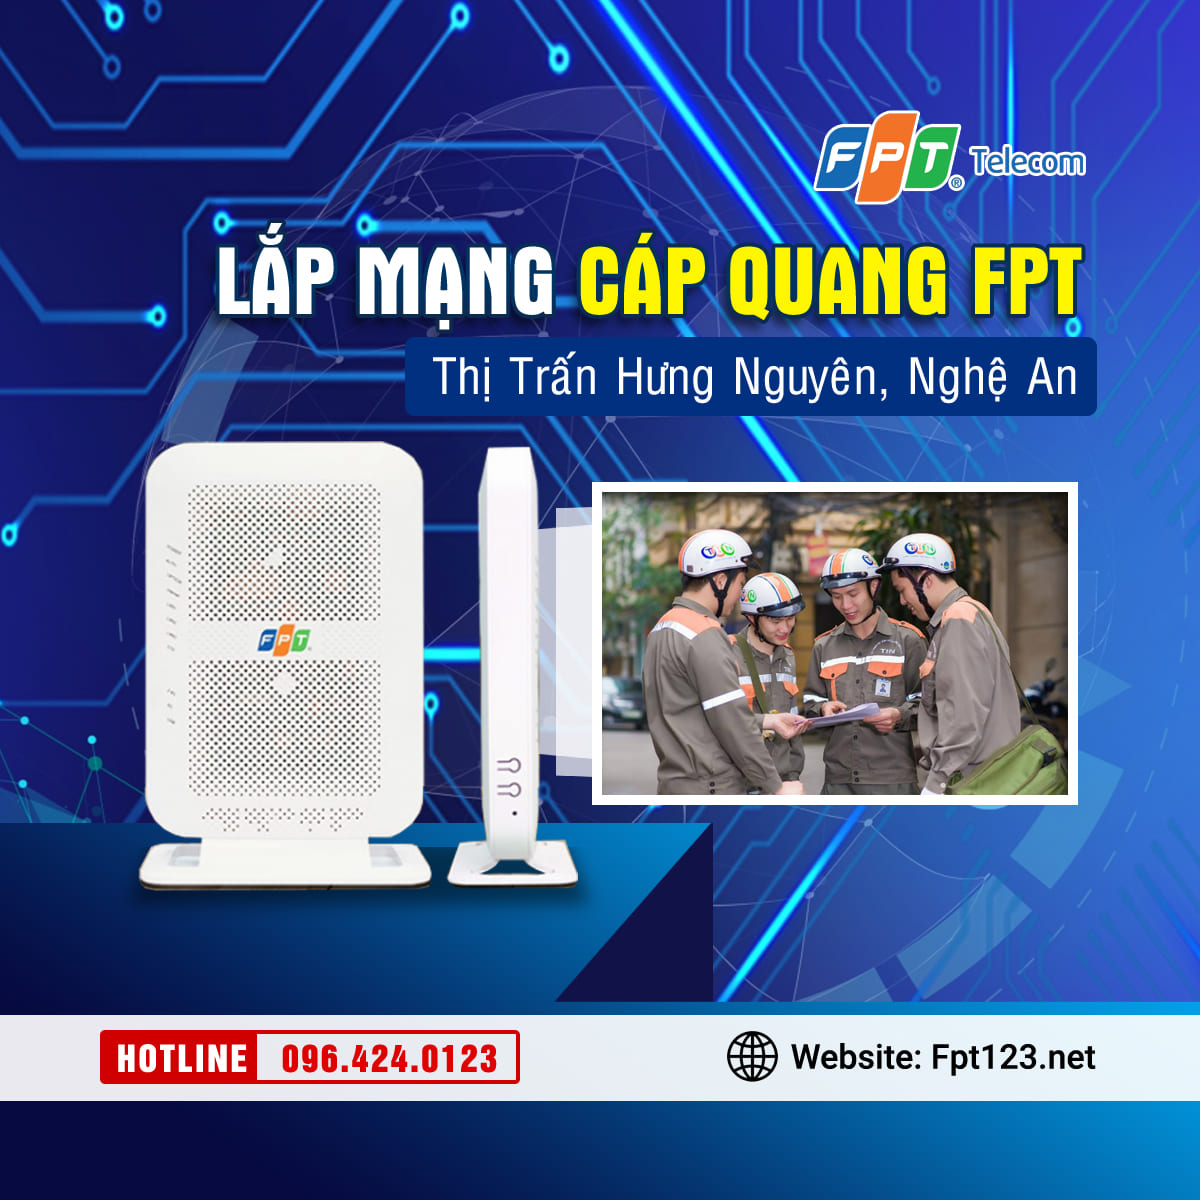 Lắp mạng cáp quang FPT thị trấn Hưng Nguyên, Nghệ An